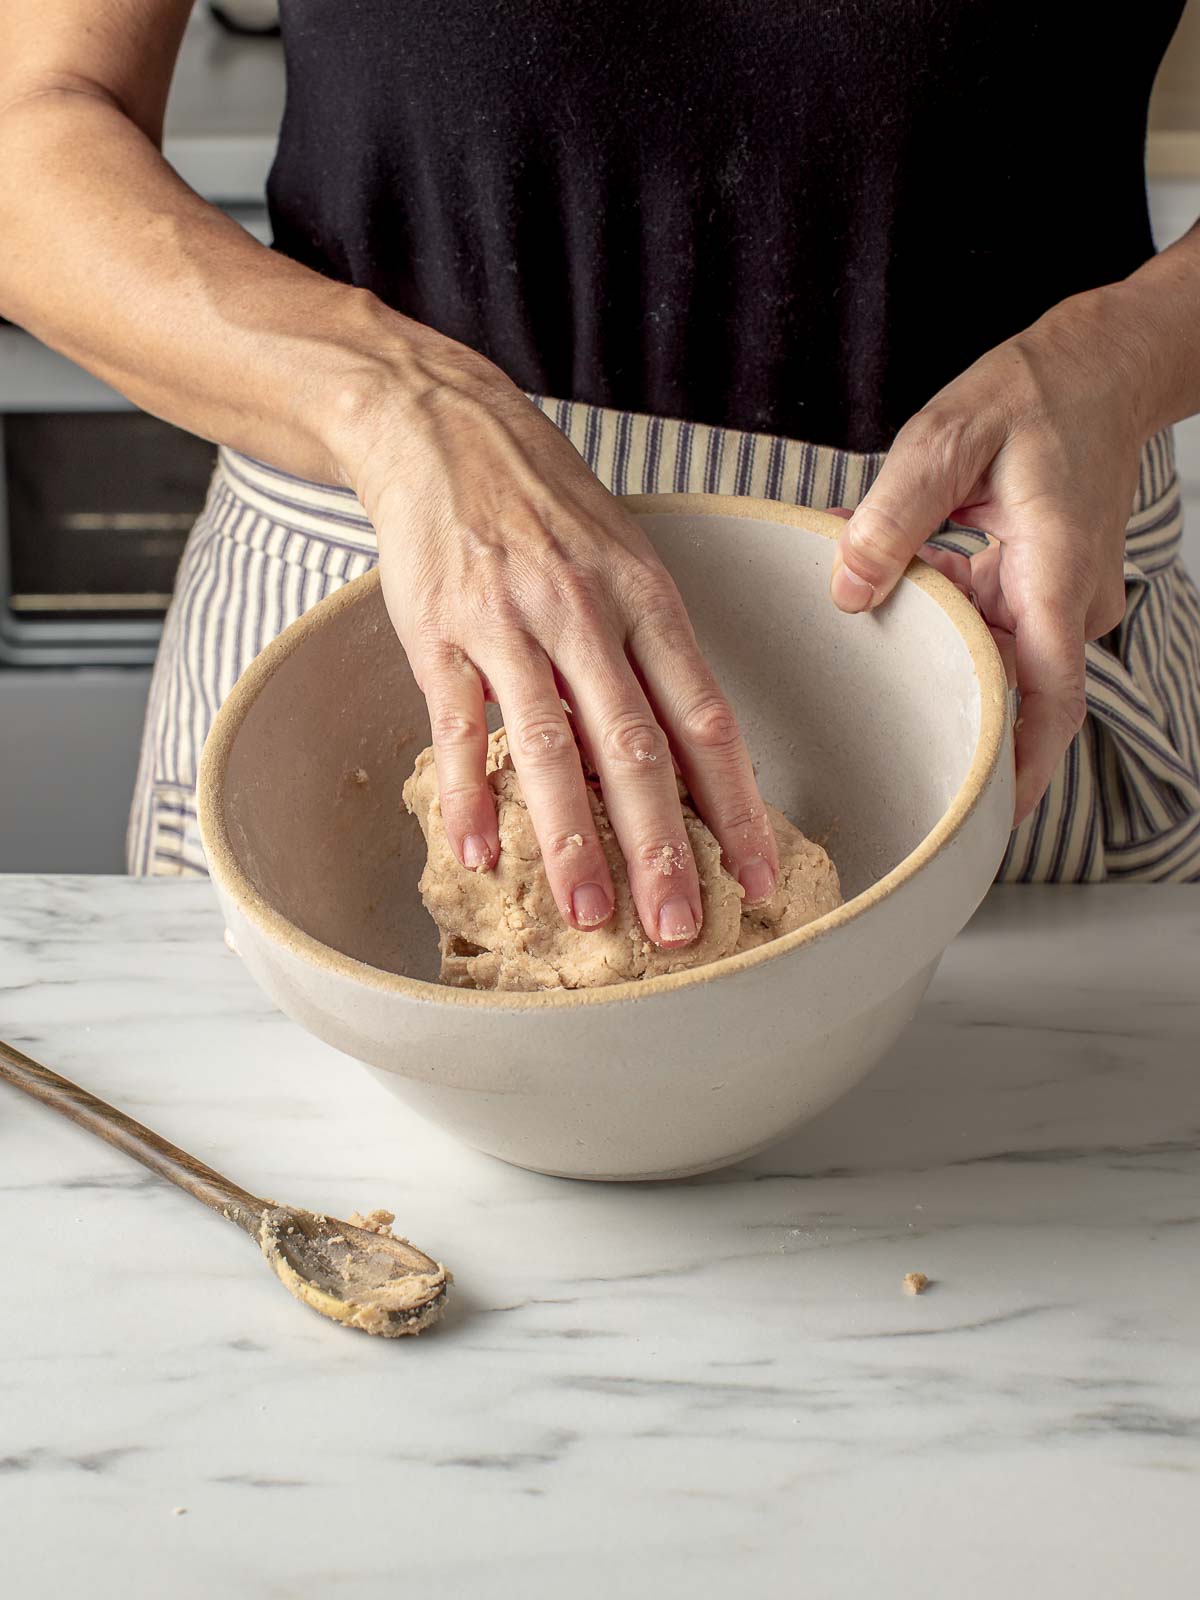 A woman using her hands to mix sourdough graham cracker dough.